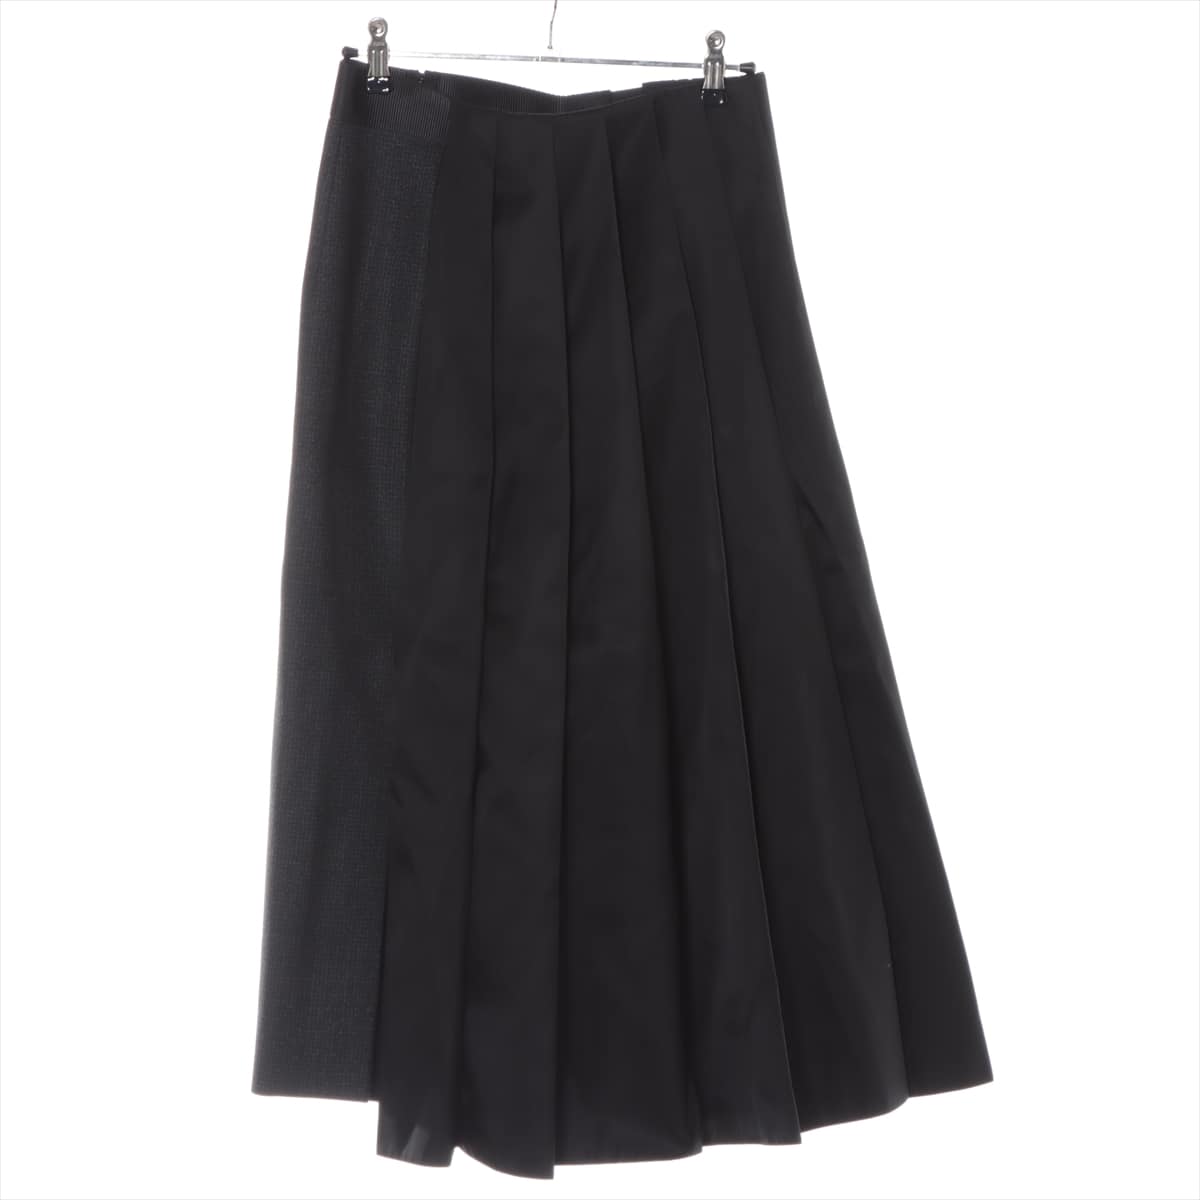 Prada 21 years Wool & nylon Skirt 38 Ladies' Black x Gray  P1998H Re Nylon